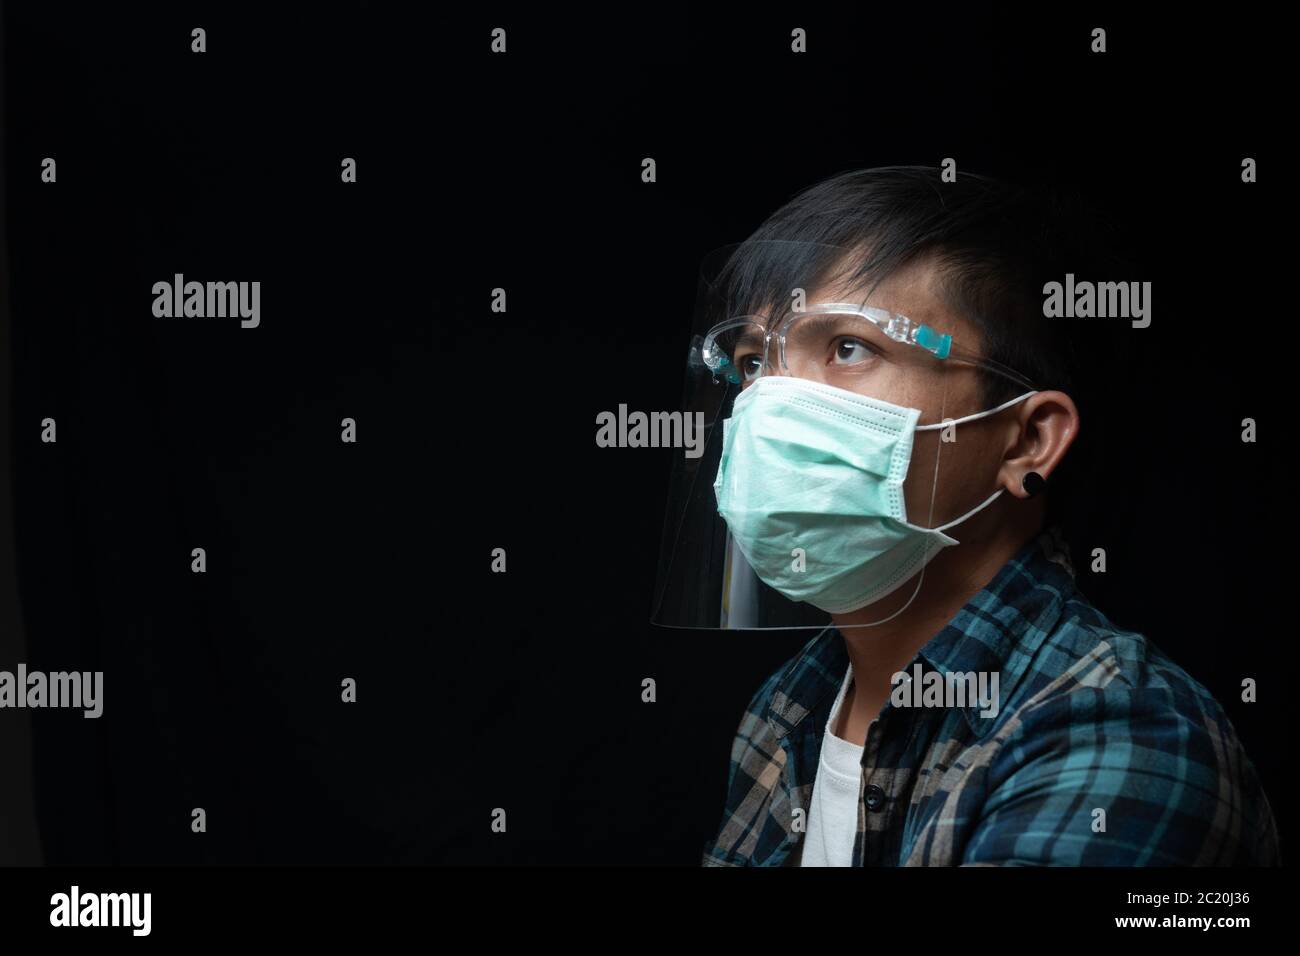 Nahaufnahme Portrait Mann Tragen Sie einen Gesichtsschutz und Maske für Ausbruch Coronavirus oder Covid-19, New Normal Concept Stockfoto